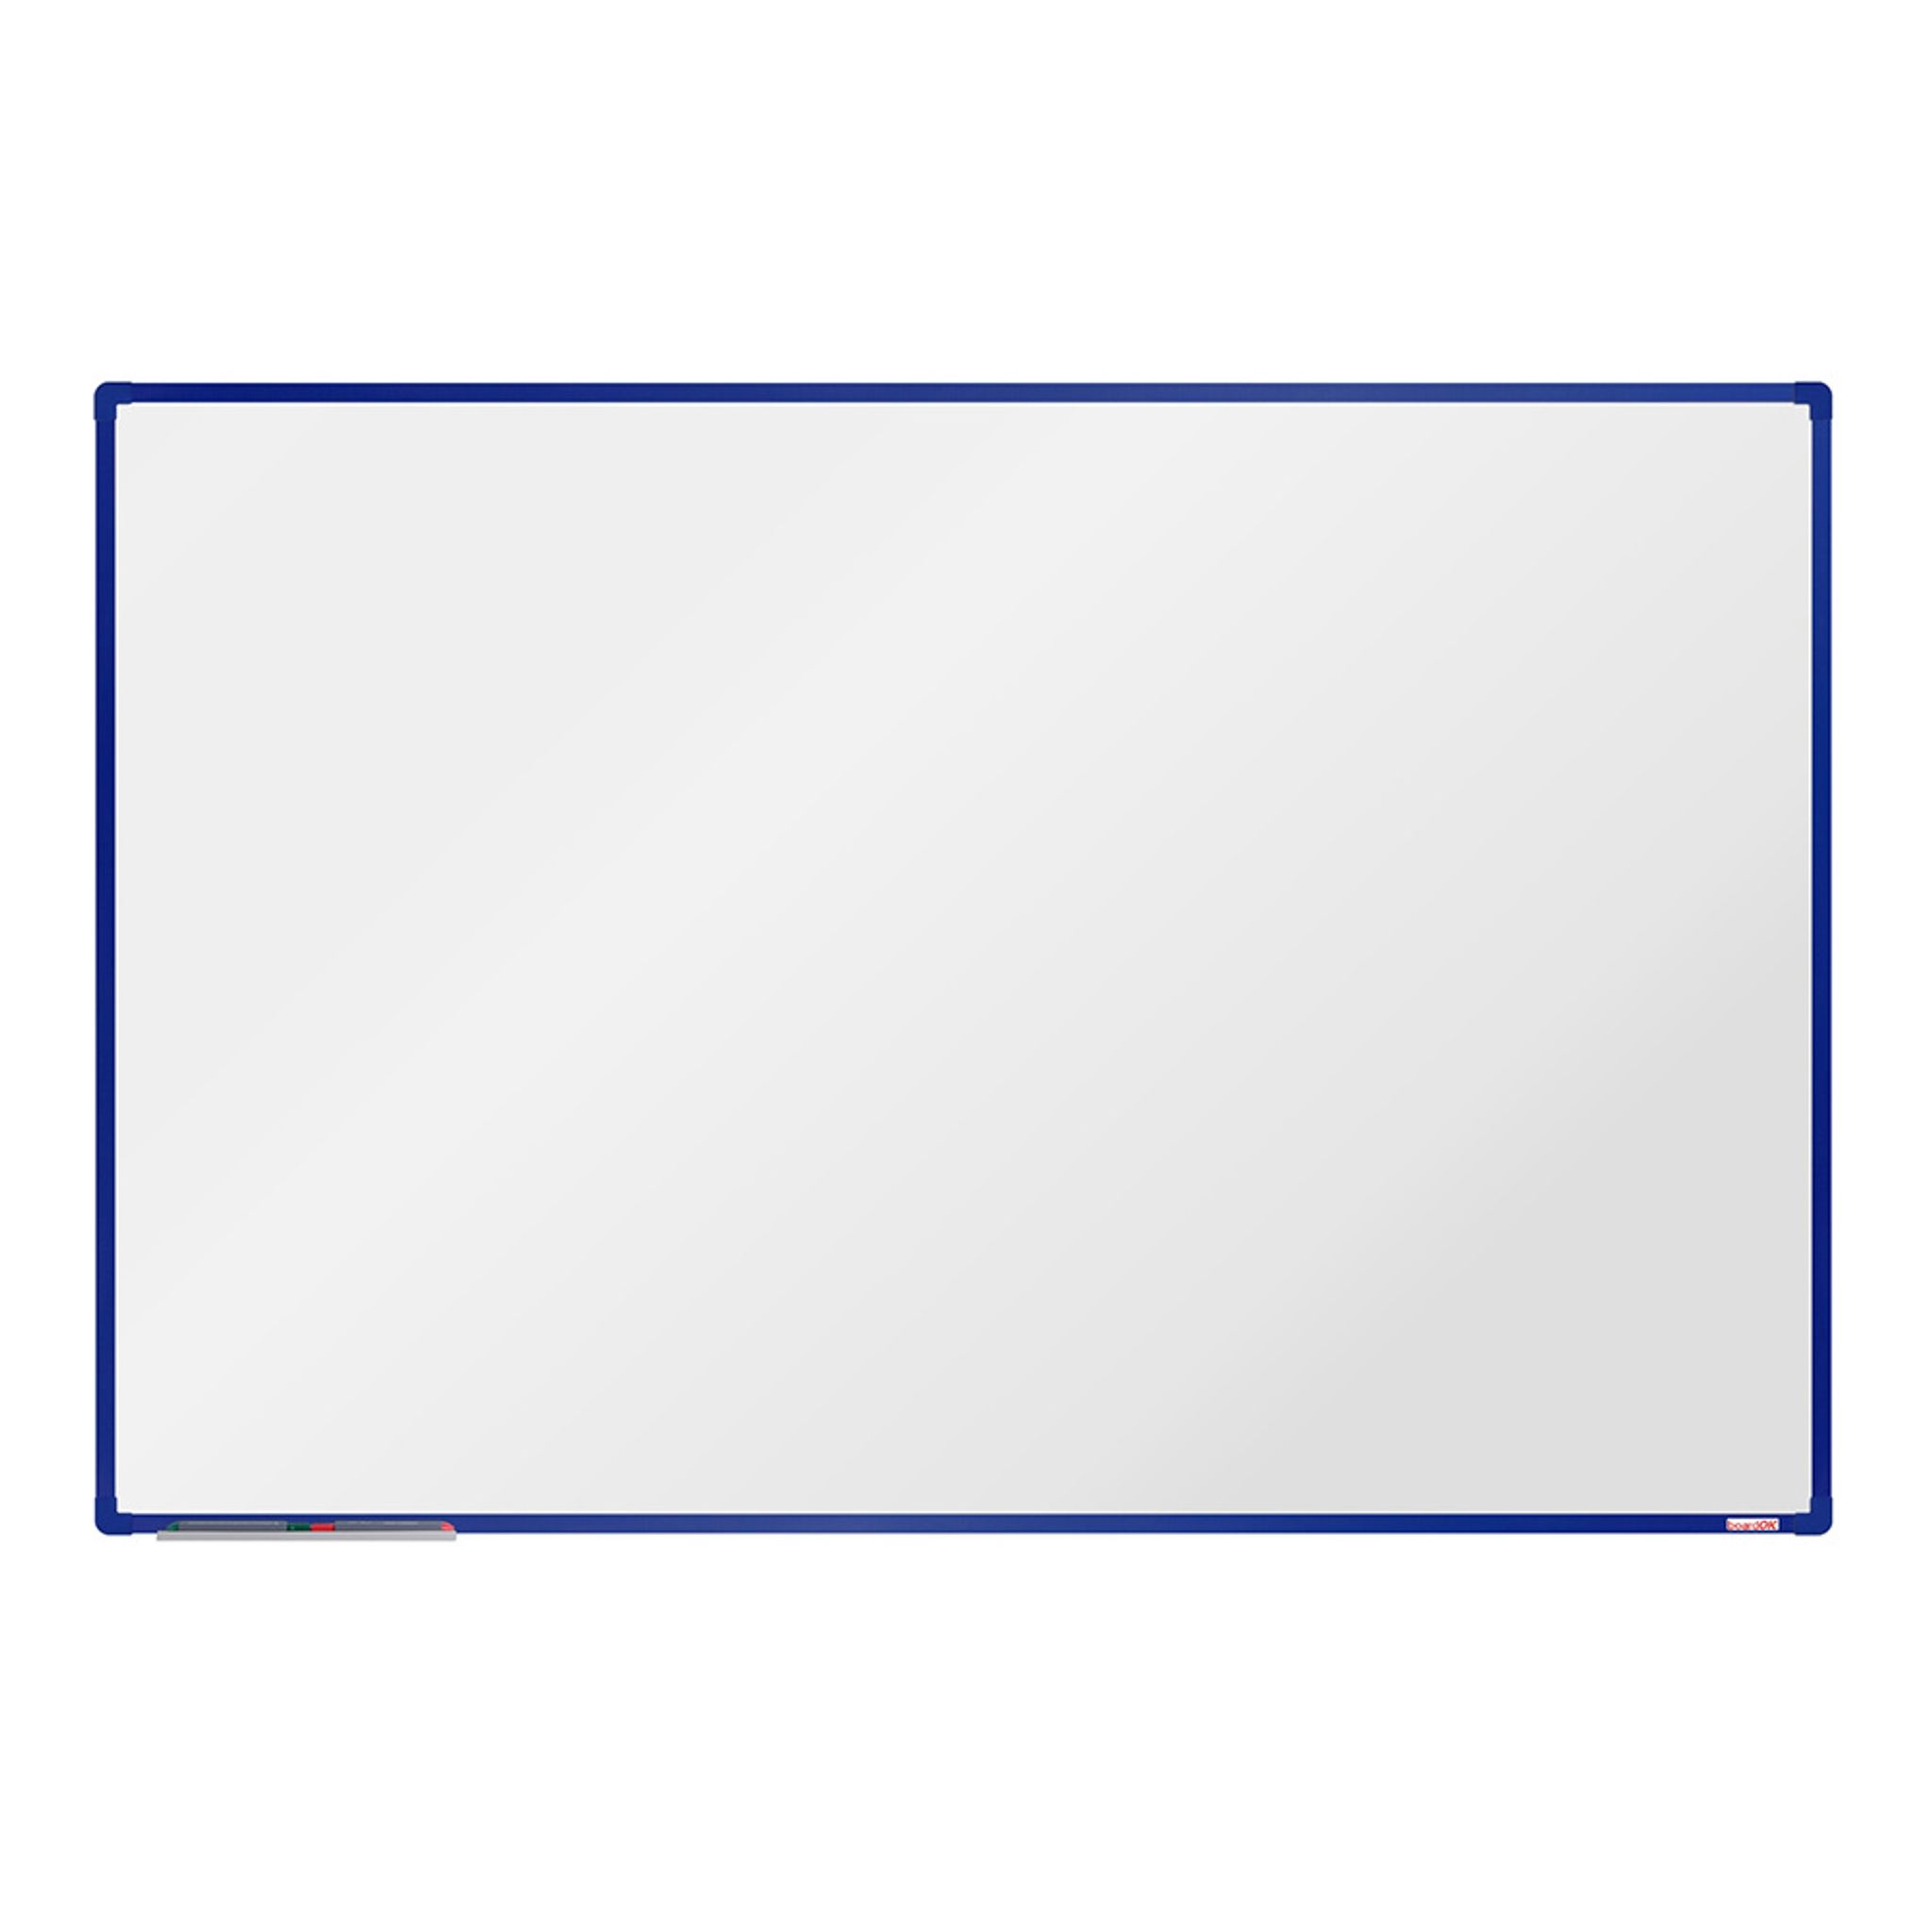 Biała magnetyczna tablica do pisania boardOK 1800 x 1200 mm, niebieska rama